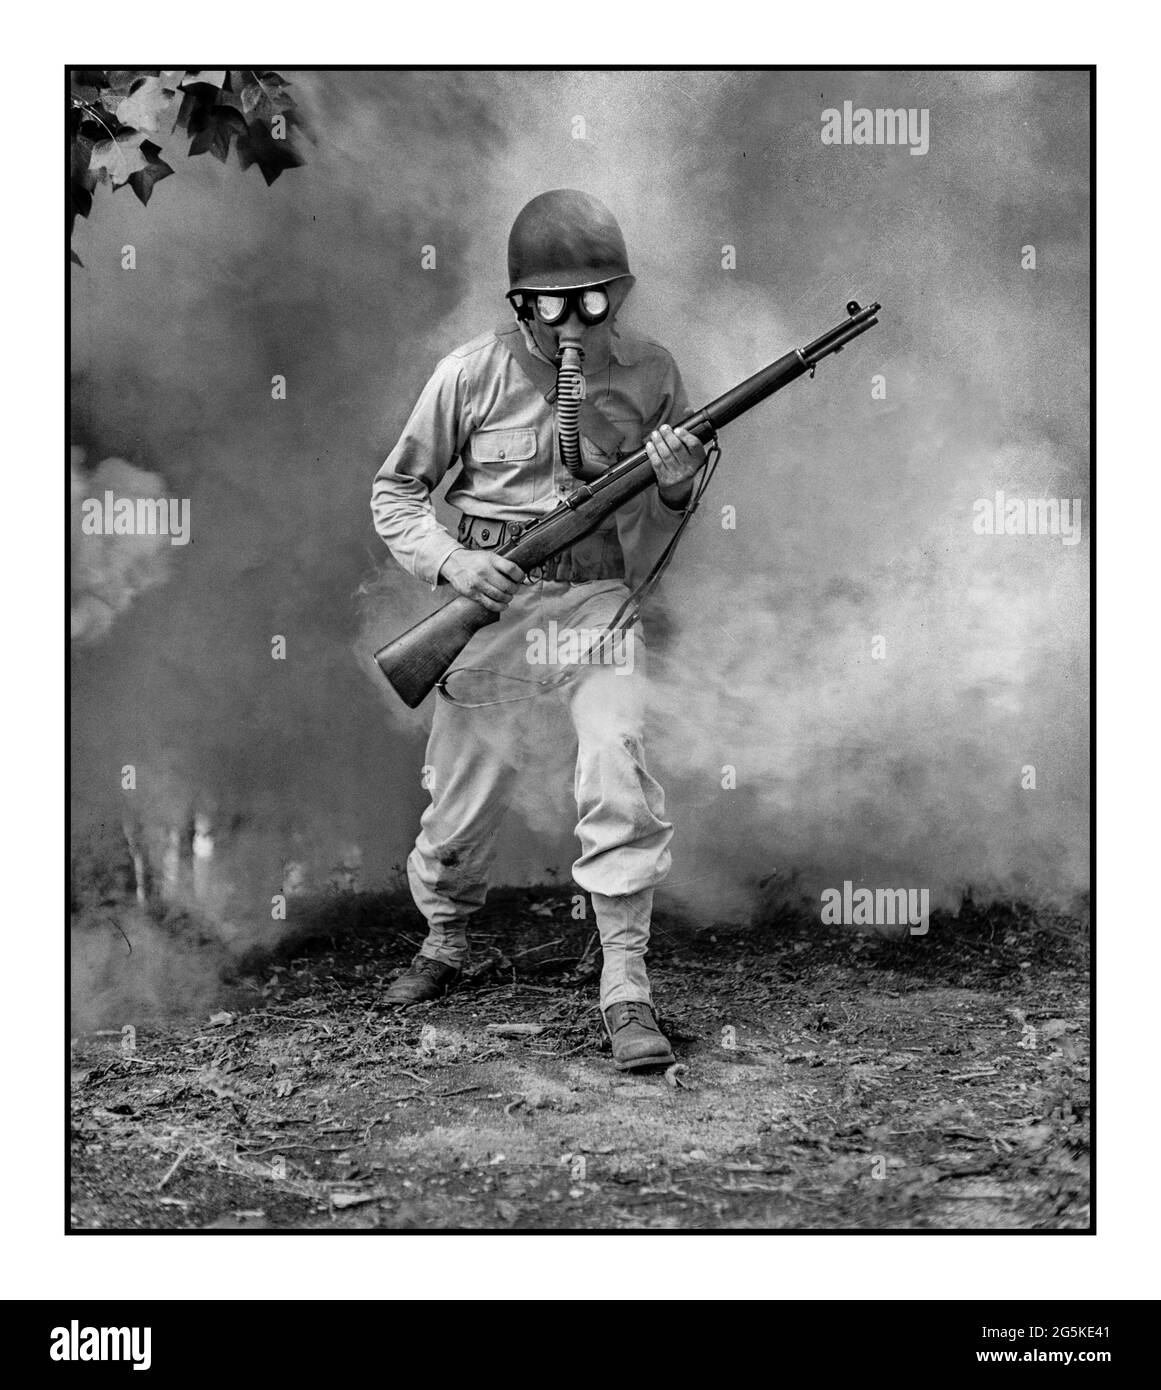 Gas-ANGRIFFSTRAINING des 2. Weltkriegs in Fort Belvoir, Virginia. Sergeant George Camblair lernen, wie man eine Gasmaske in einer Praxis Gas / Rauchschirm Jack Delano, Fotograf 1942 Sept. Vereinigte Staaten--Virginia--Fairfax County--Fort Belvoir Stockfoto